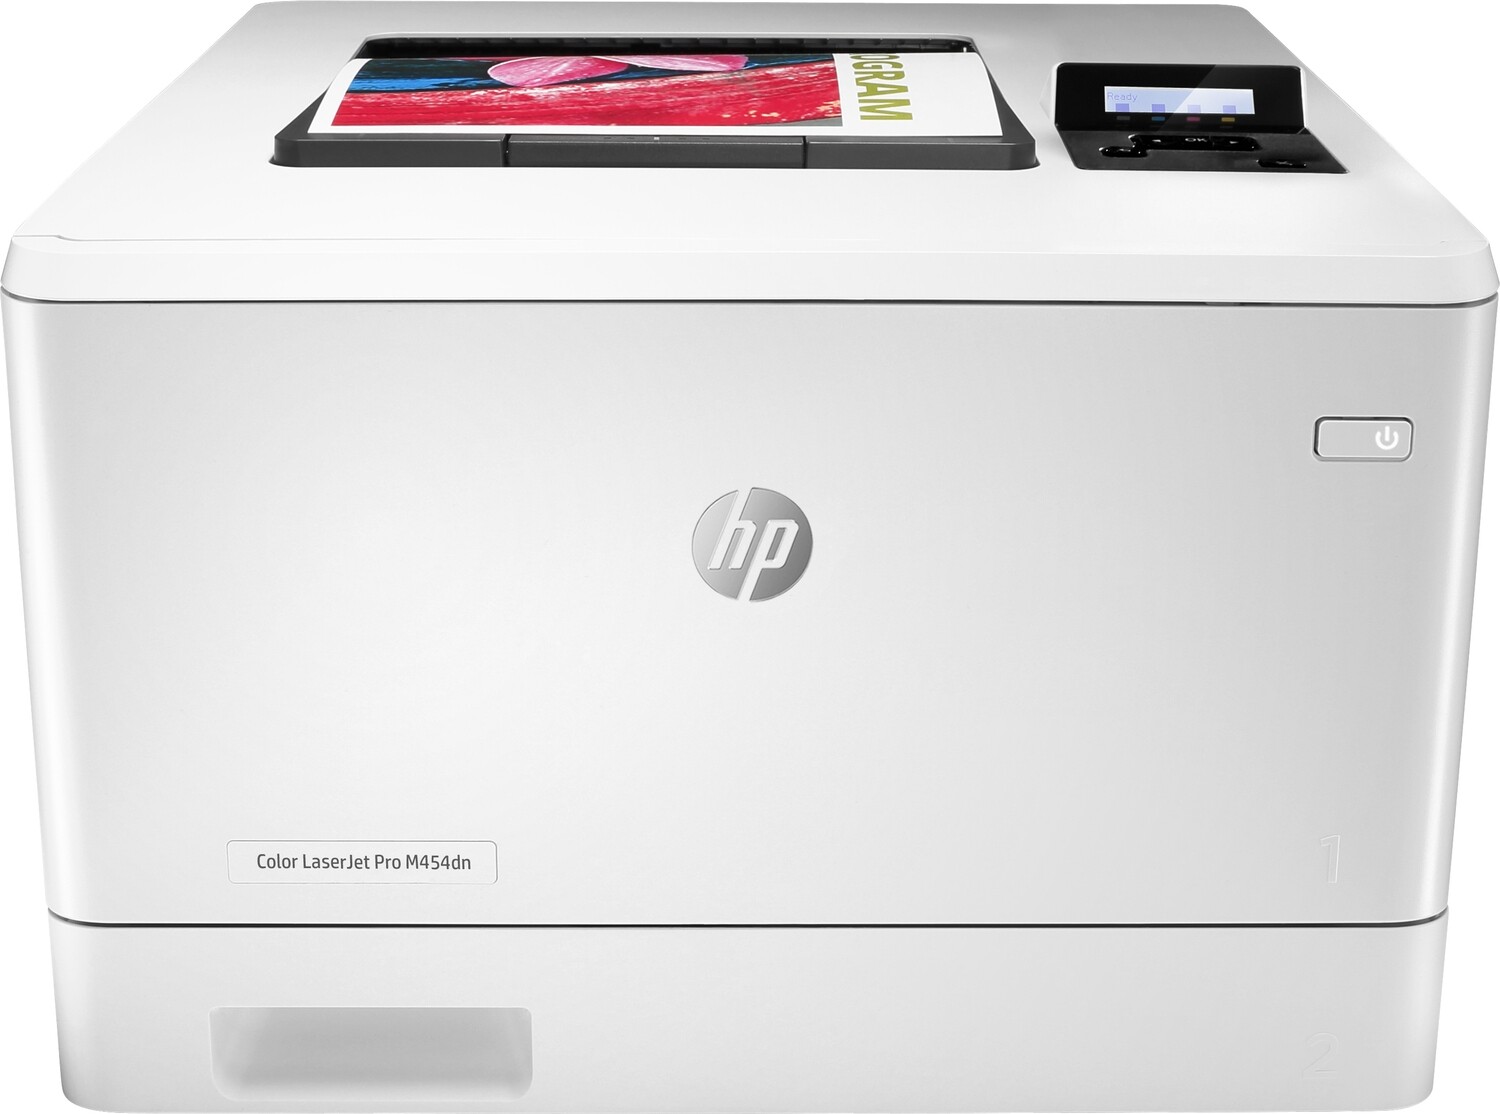 HP impresora laser color laserJet Pro M454dn